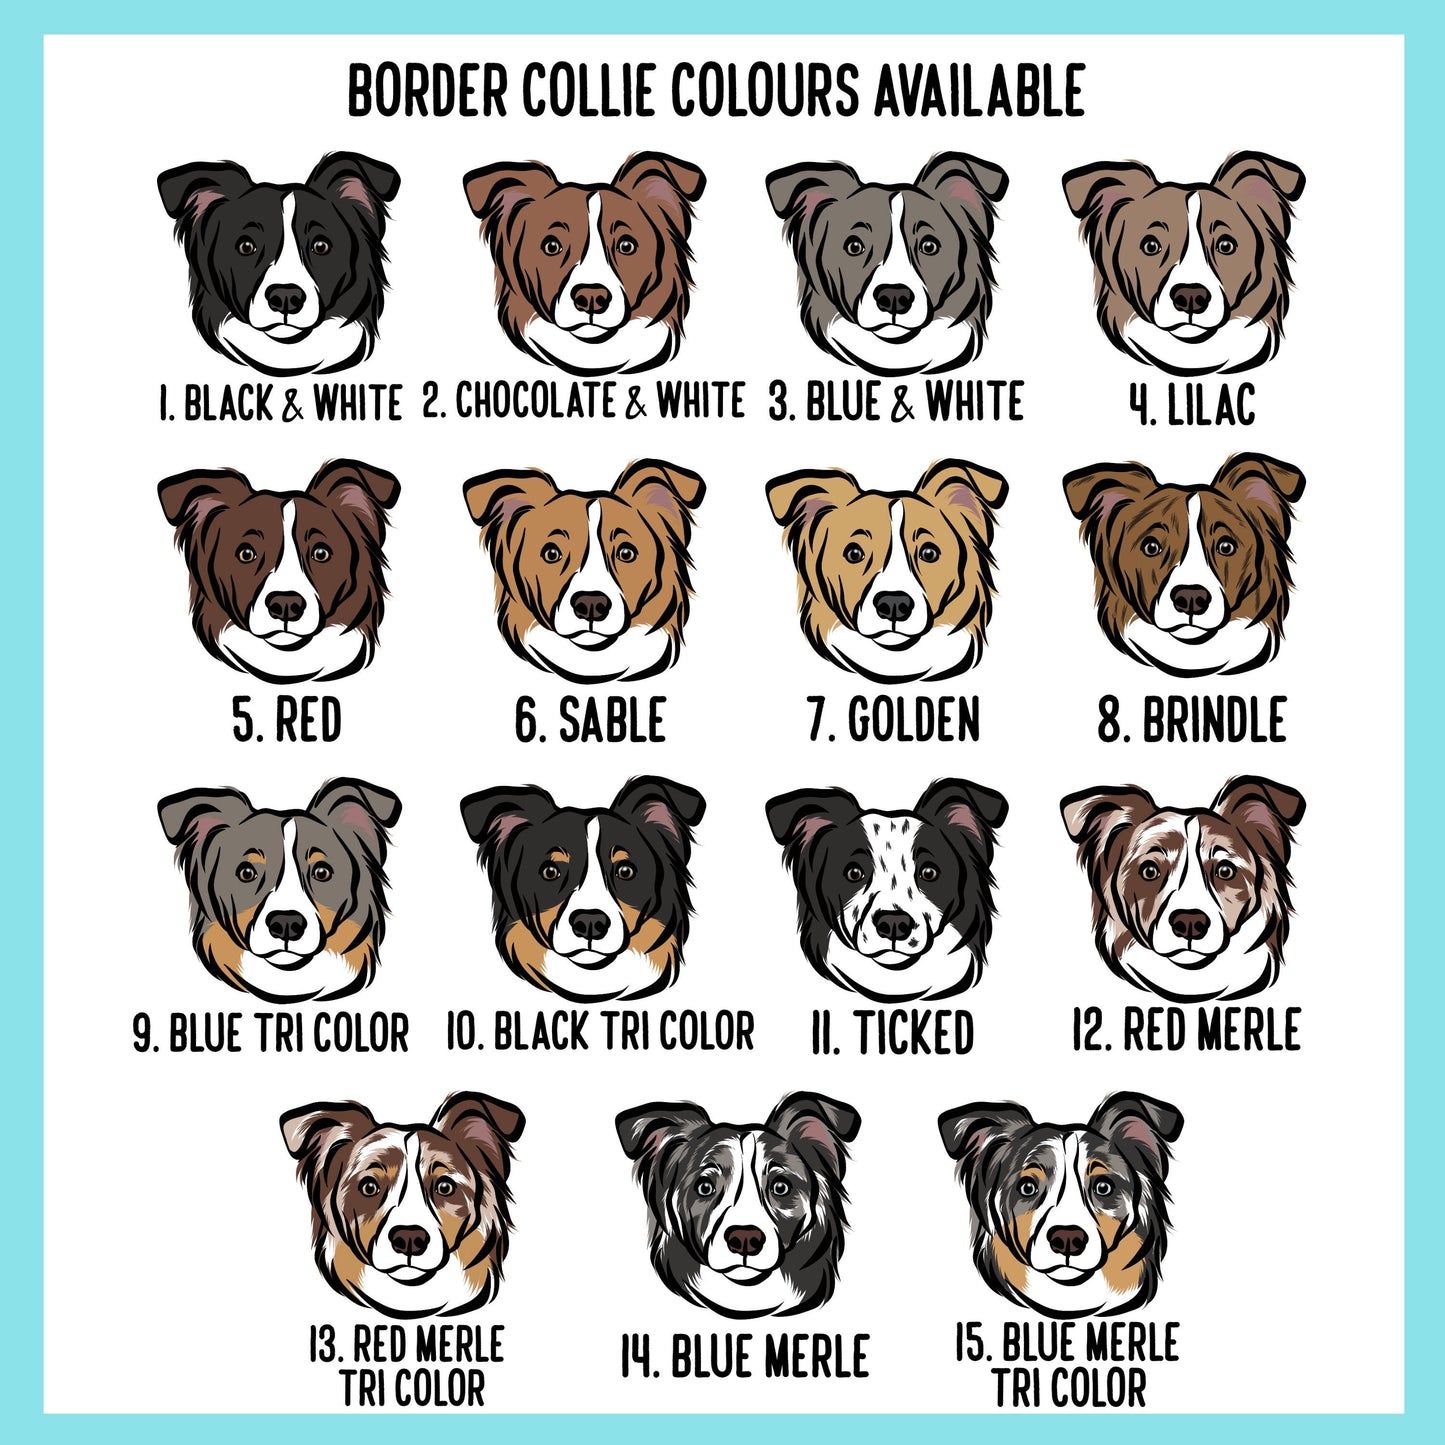 Border Collie Christmas Card/ Customisable Dog Breed Merry Christmas Card/ Border Collie Portrait Greeting Card/ Border Collie Owner Card